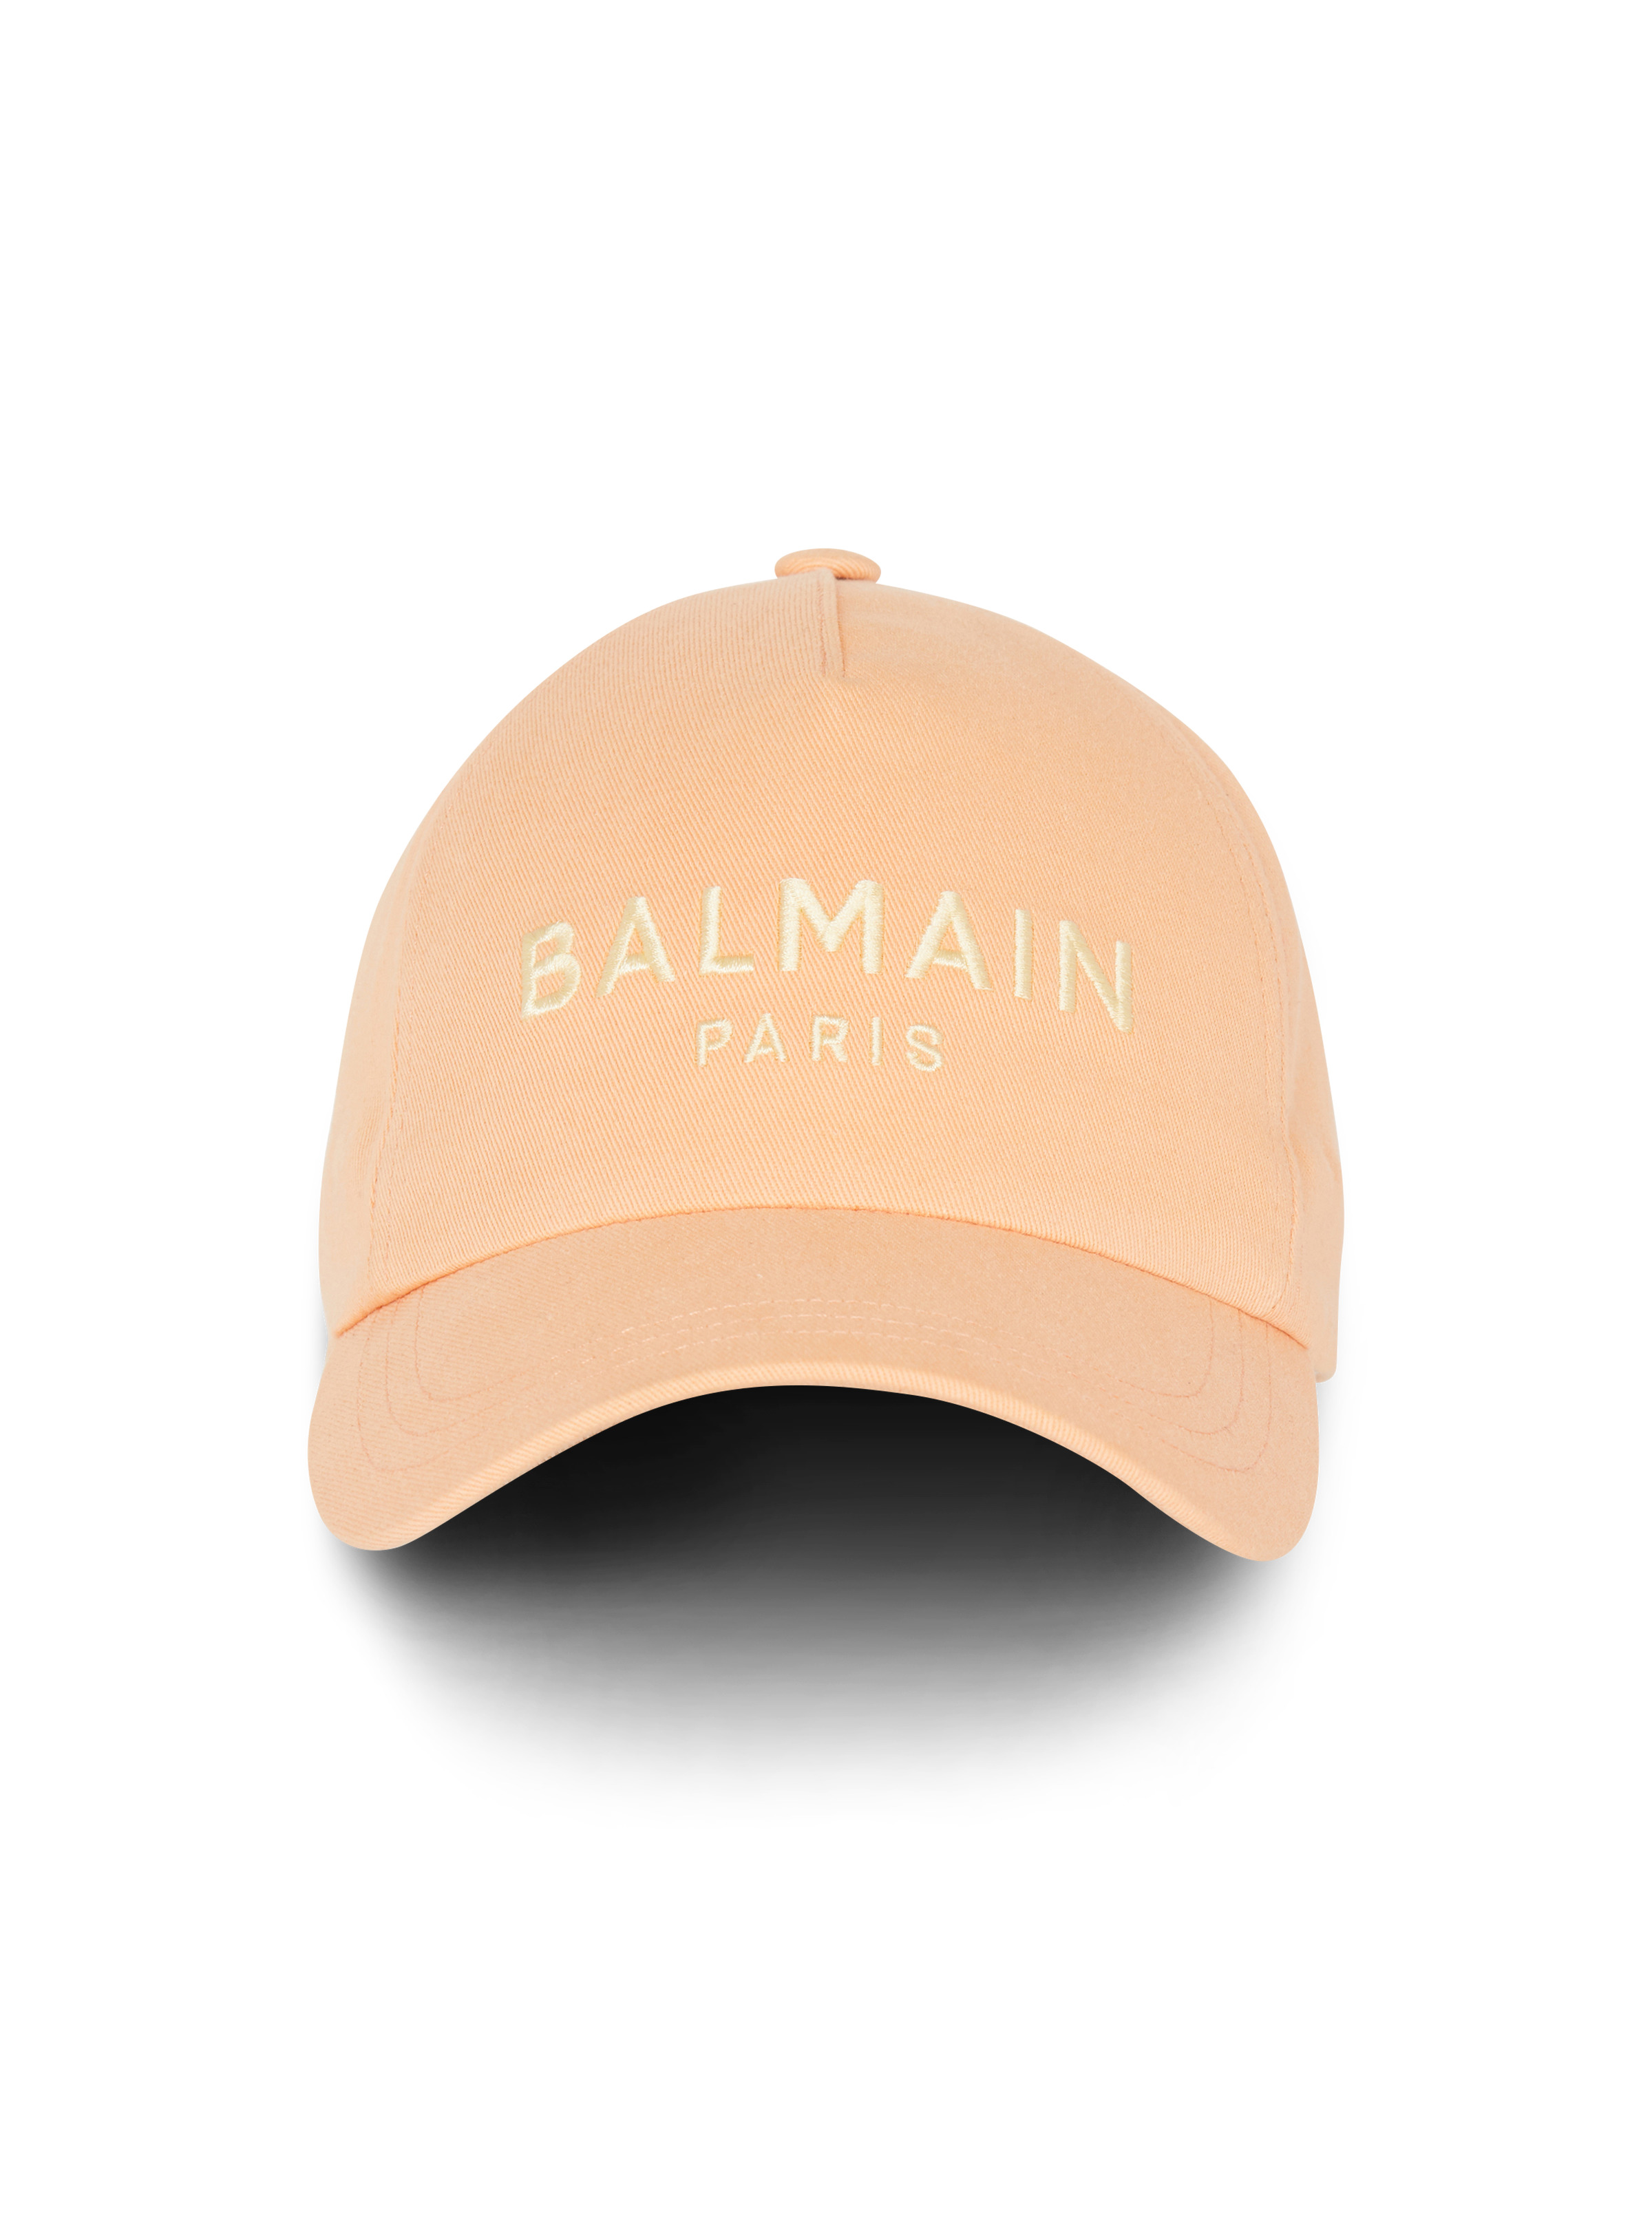 Embroidered Balmain Paris cap - 1